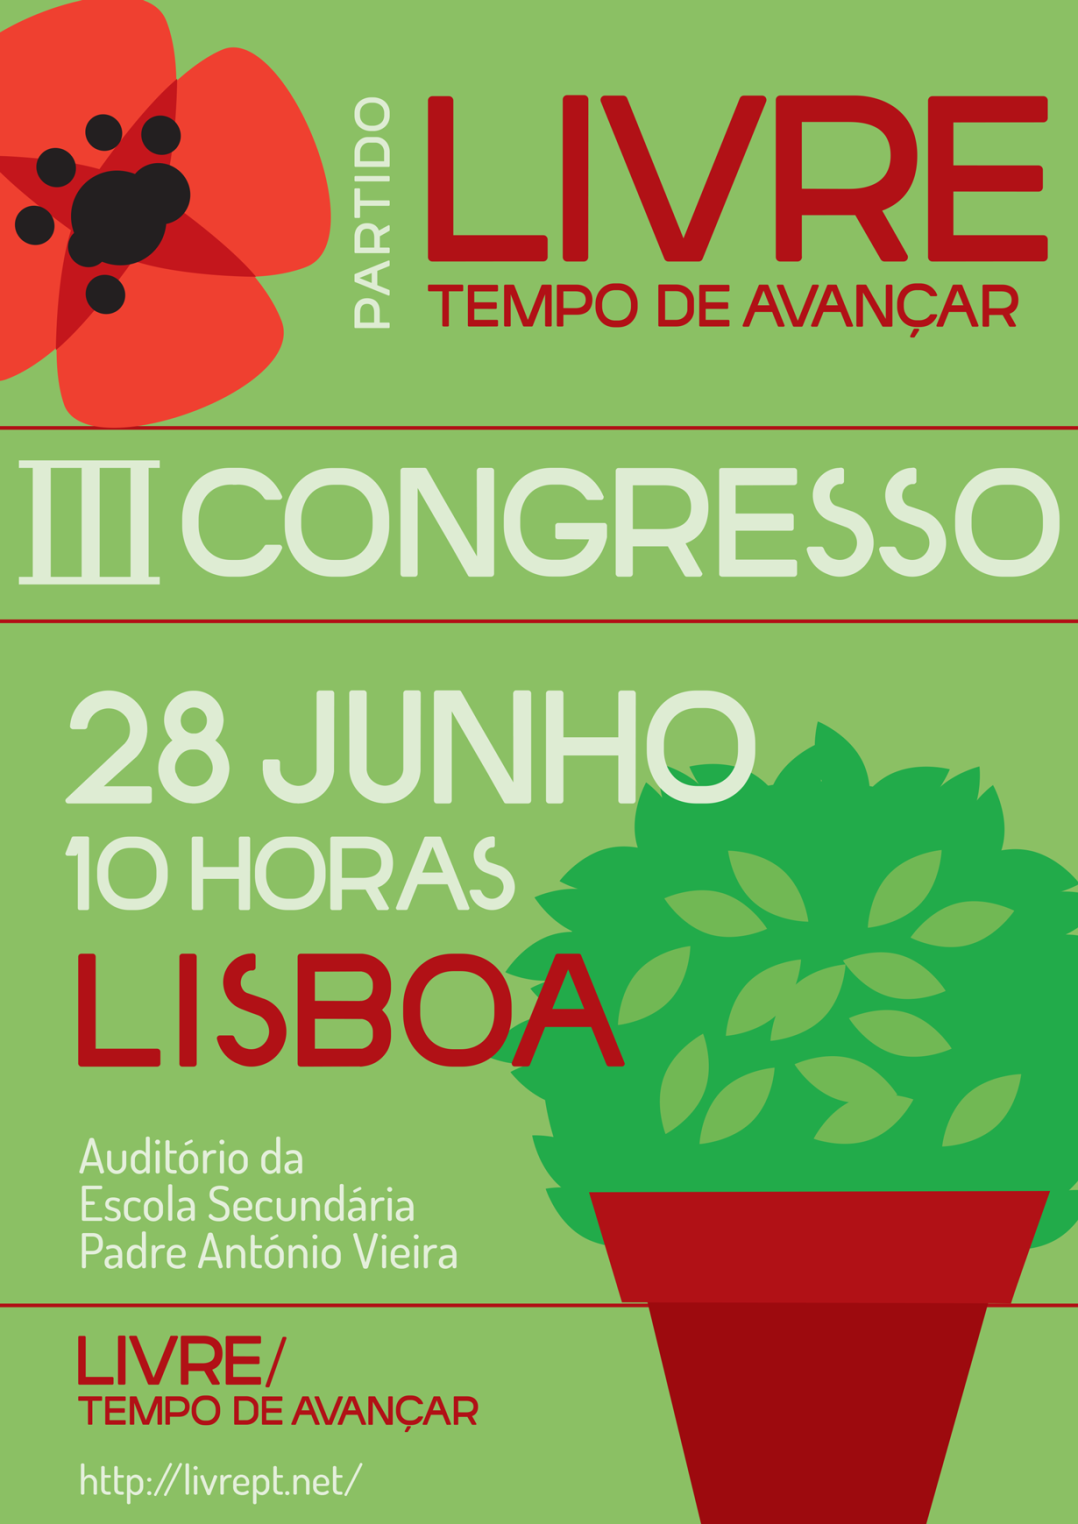 Cartaz do III Congresso do LIVRE